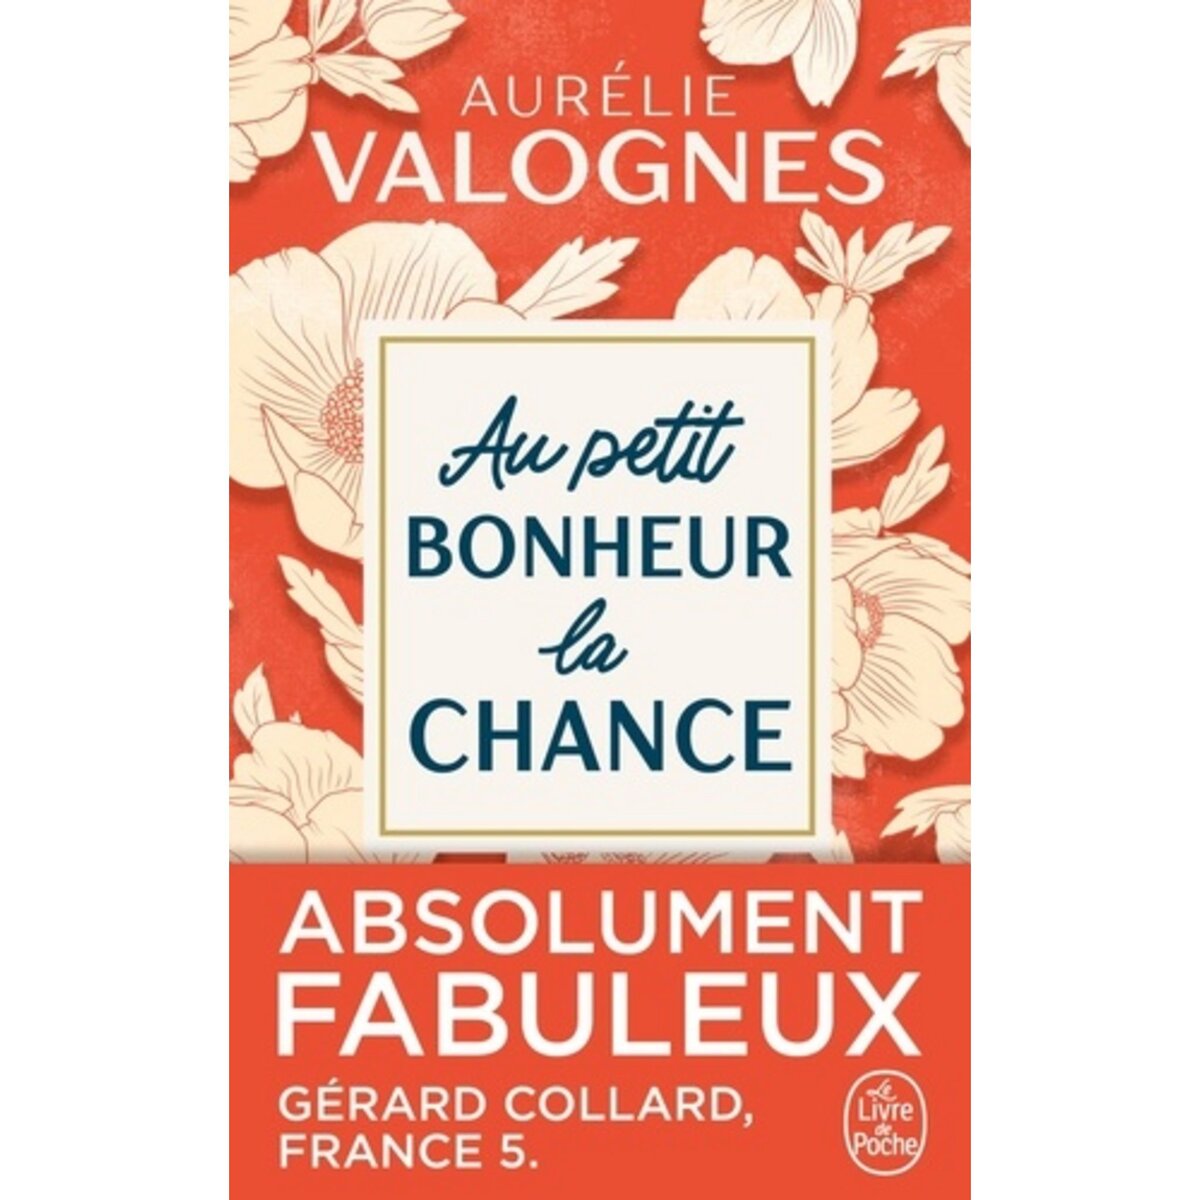  AU PETIT BONHEUR LA CHANCE, Valognes Aurélie